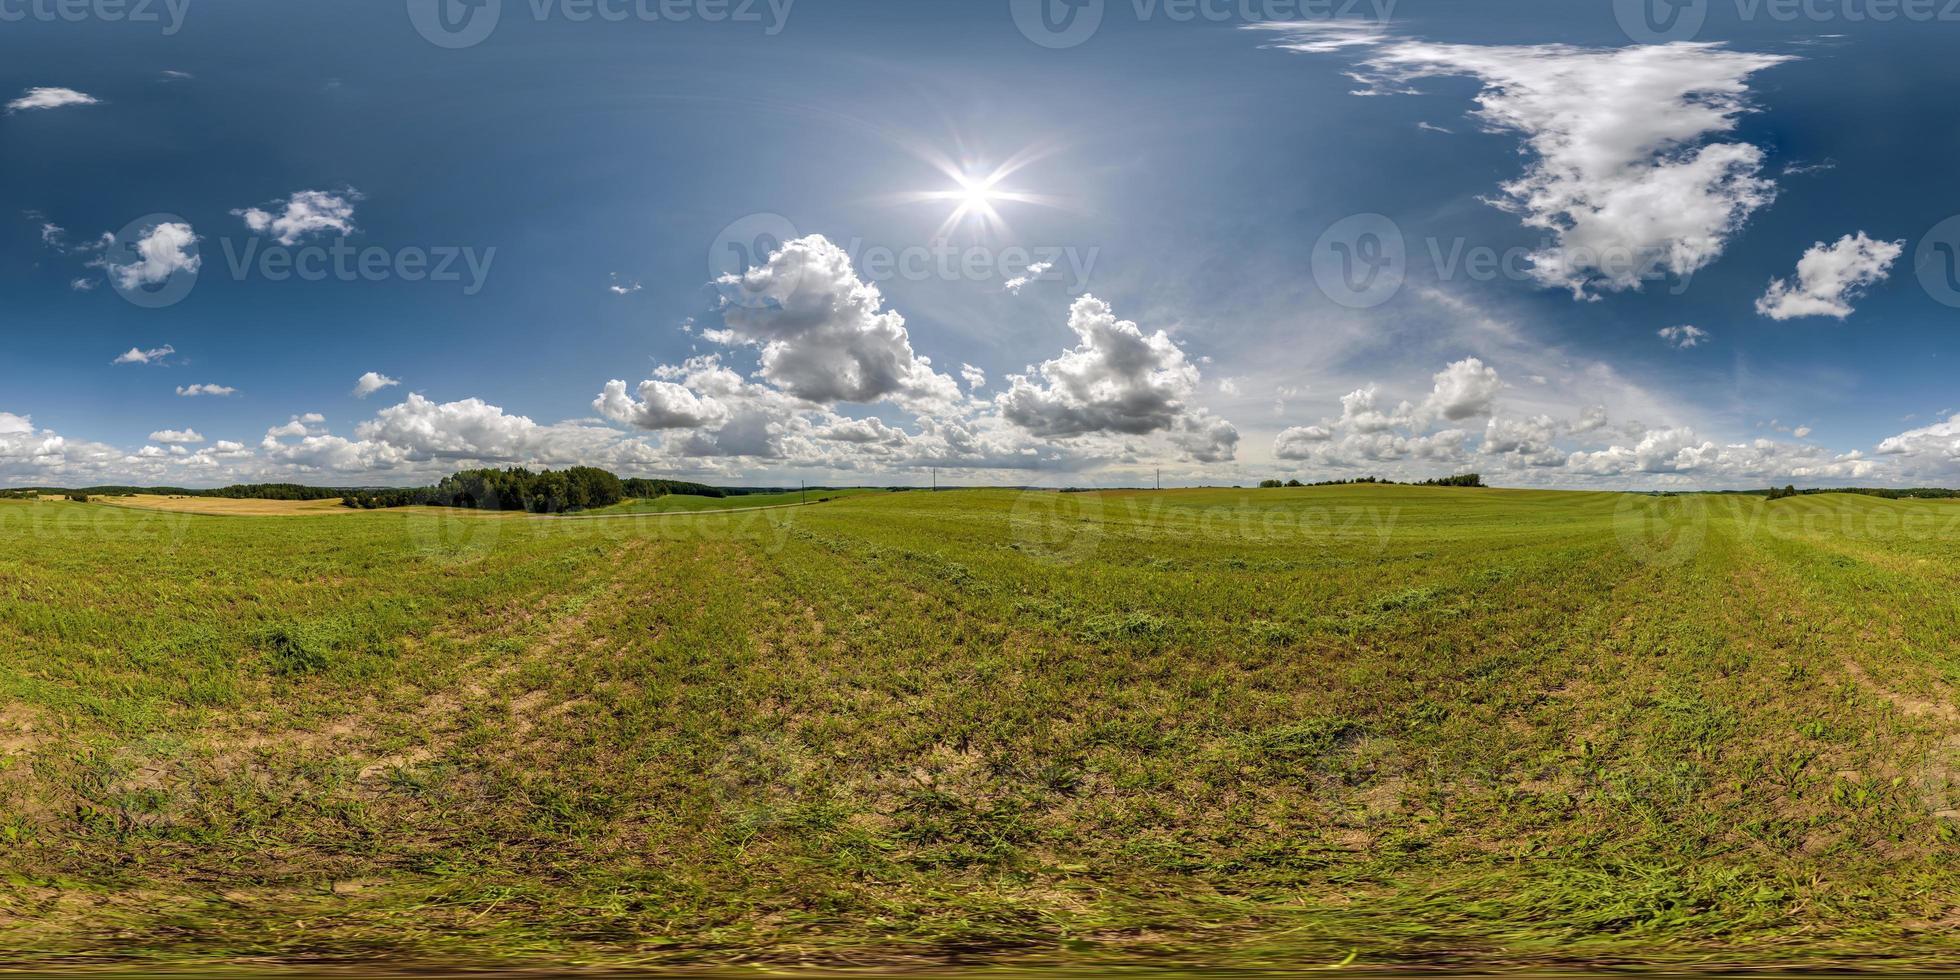 vue panoramique 360 hdri complète et transparente parmi les champs agricoles avec soleil et nuages dans un ciel couvert en projection sphérique équirectangulaire, prête à être utilisée comme remplacement du ciel dans les panoramas de drones ou le contenu vr photo